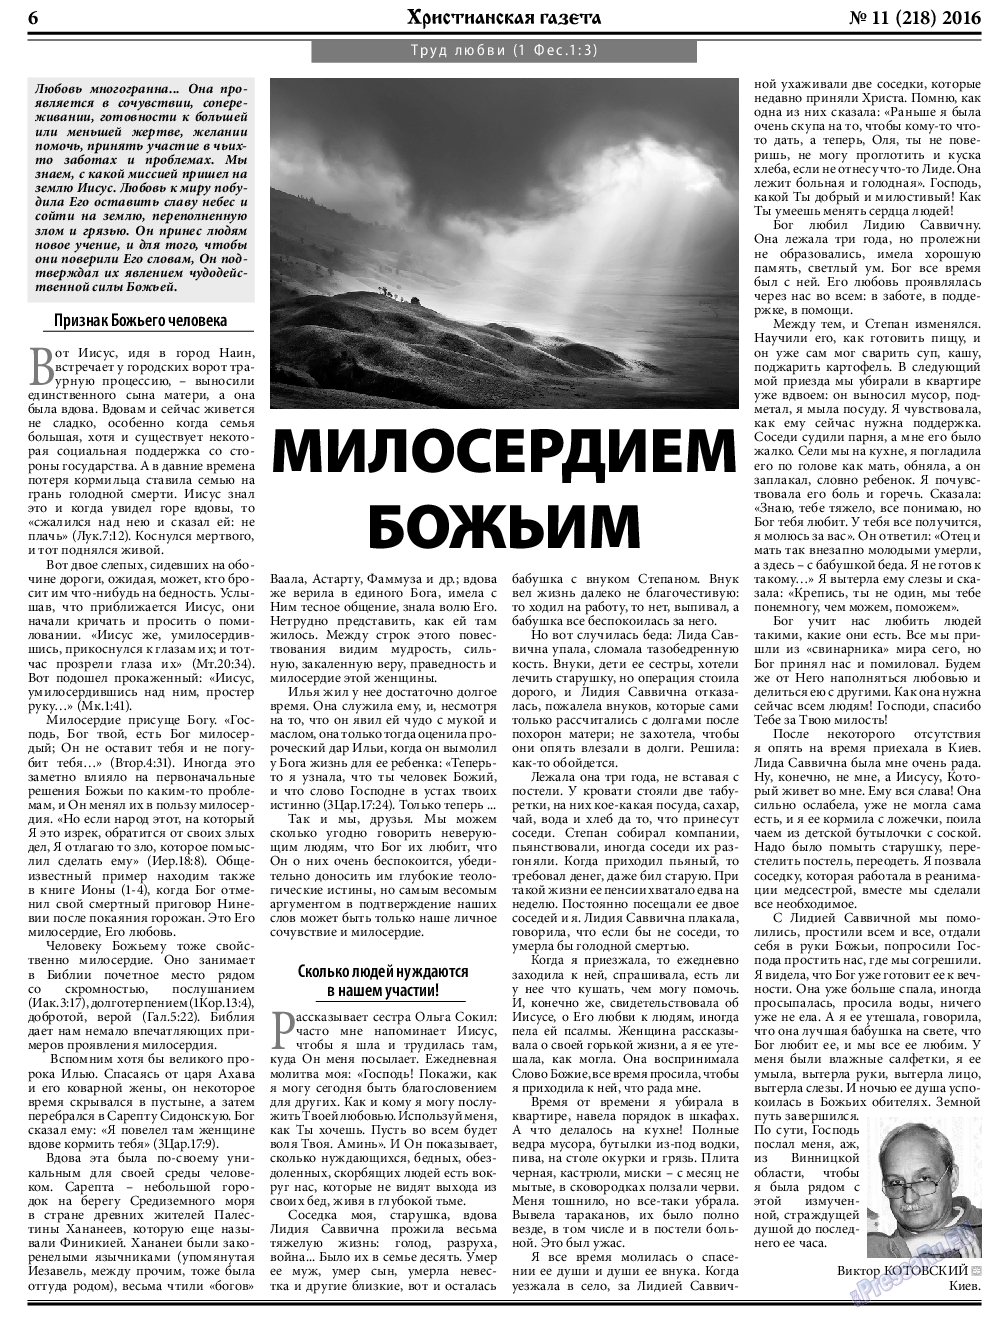 Христианская газета, газета. 2016 №11 стр.6